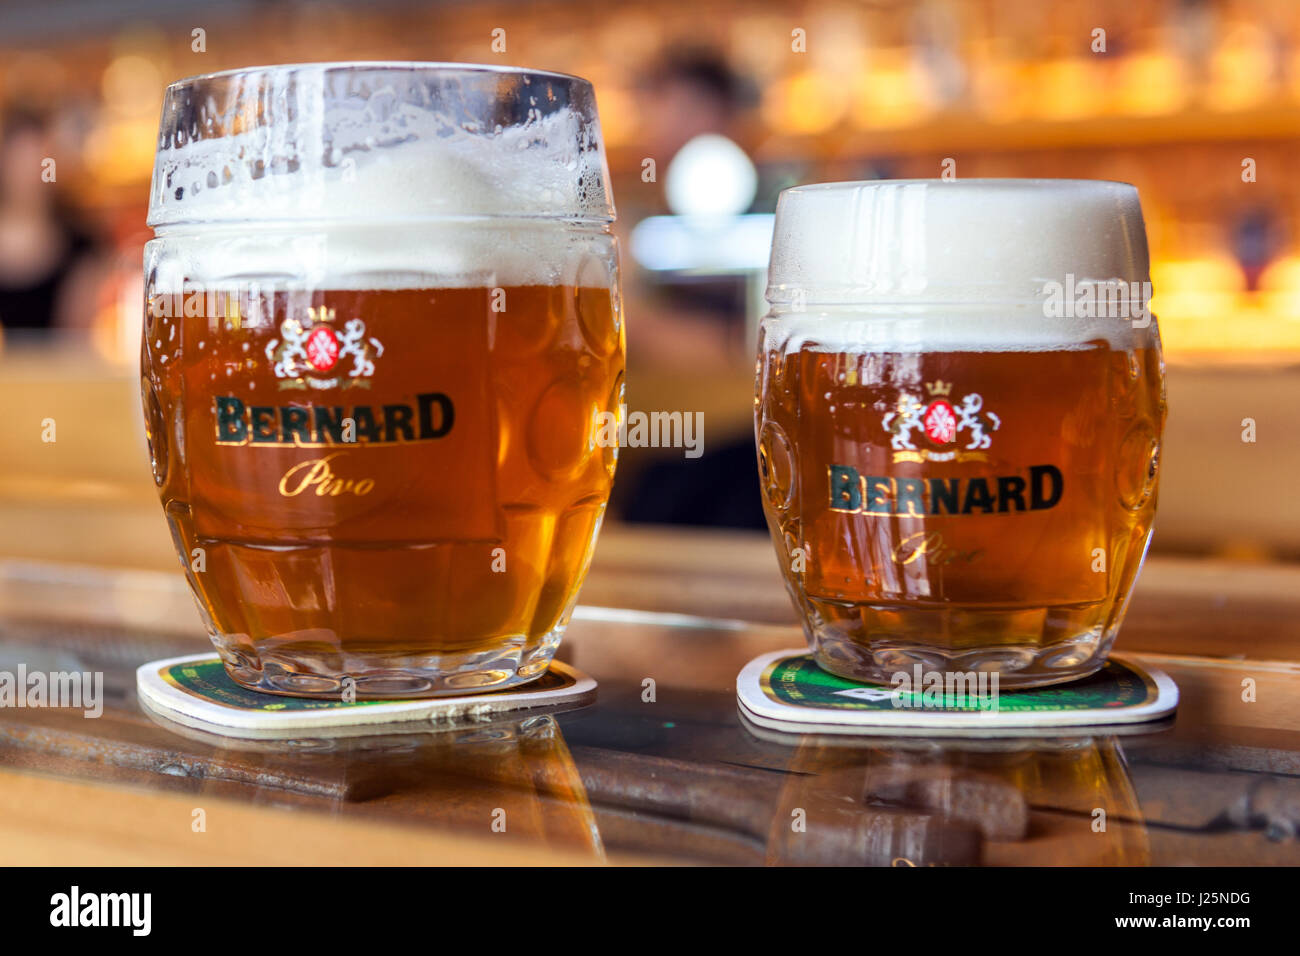 Tschechisches Bierglas aus der Brauerei Bernard Tschechische Republik Glas Bier Stockfoto